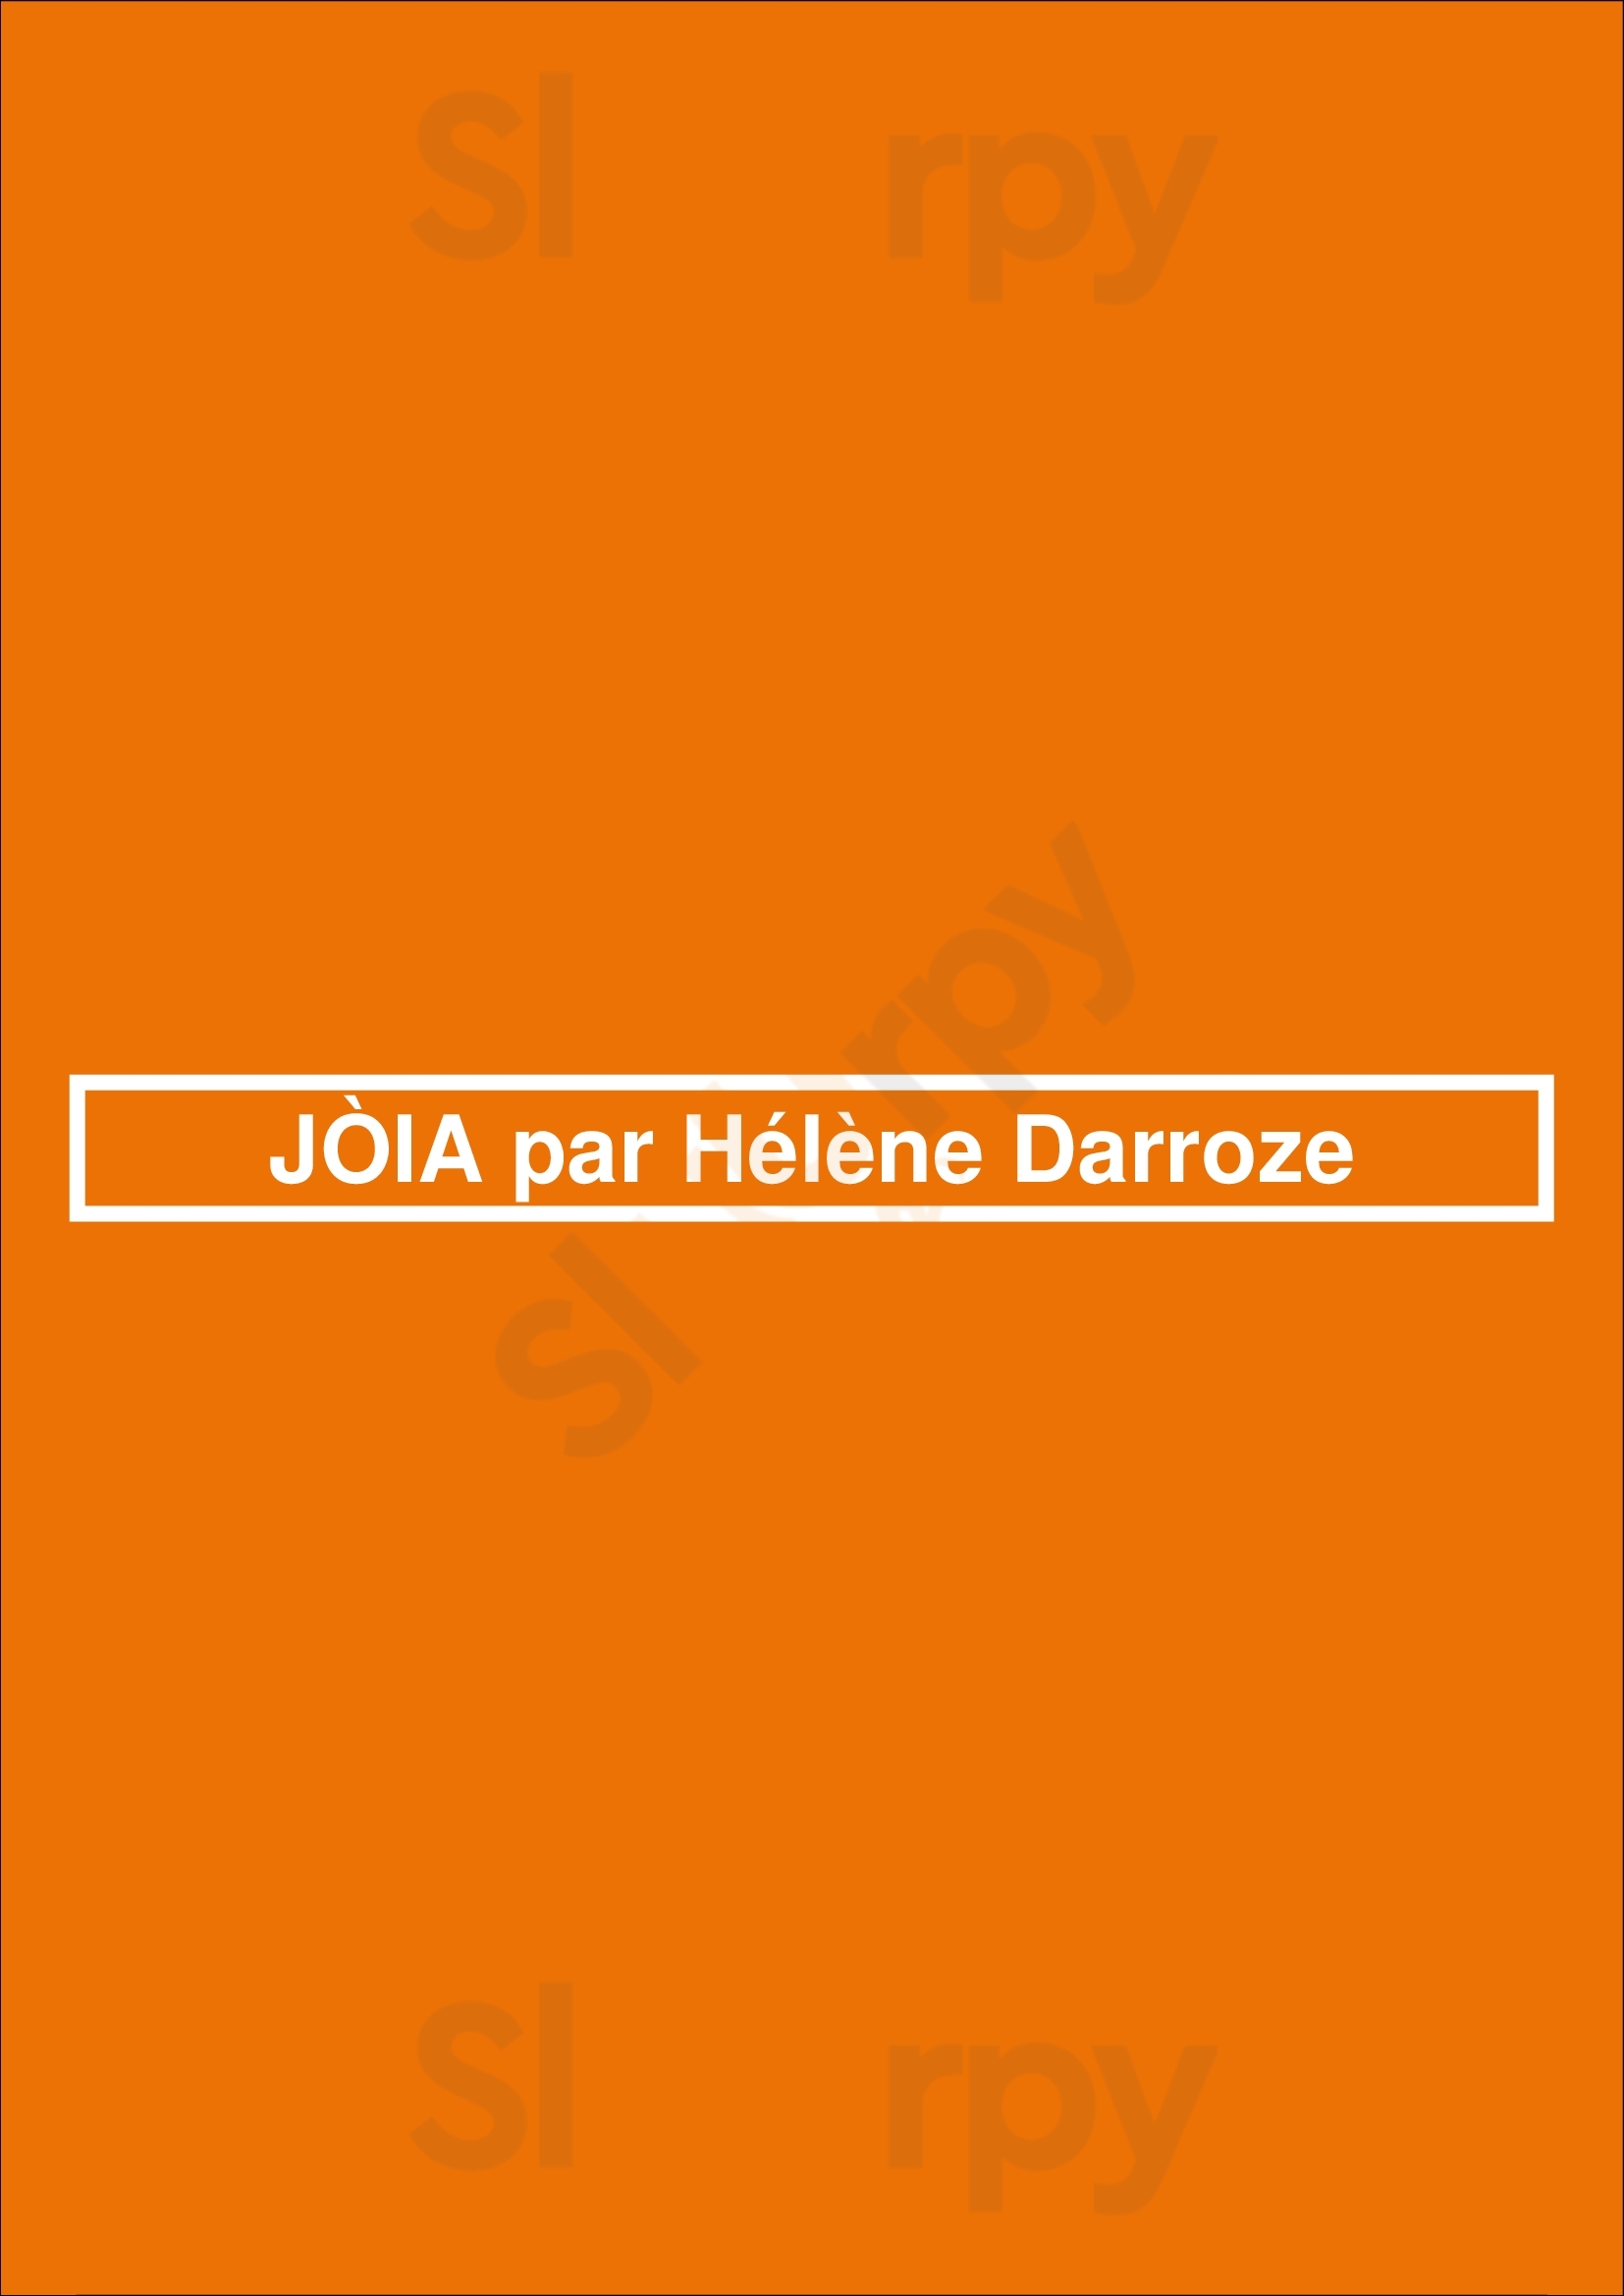 JÒia Par Hélène Darroze Paris Menu - 1